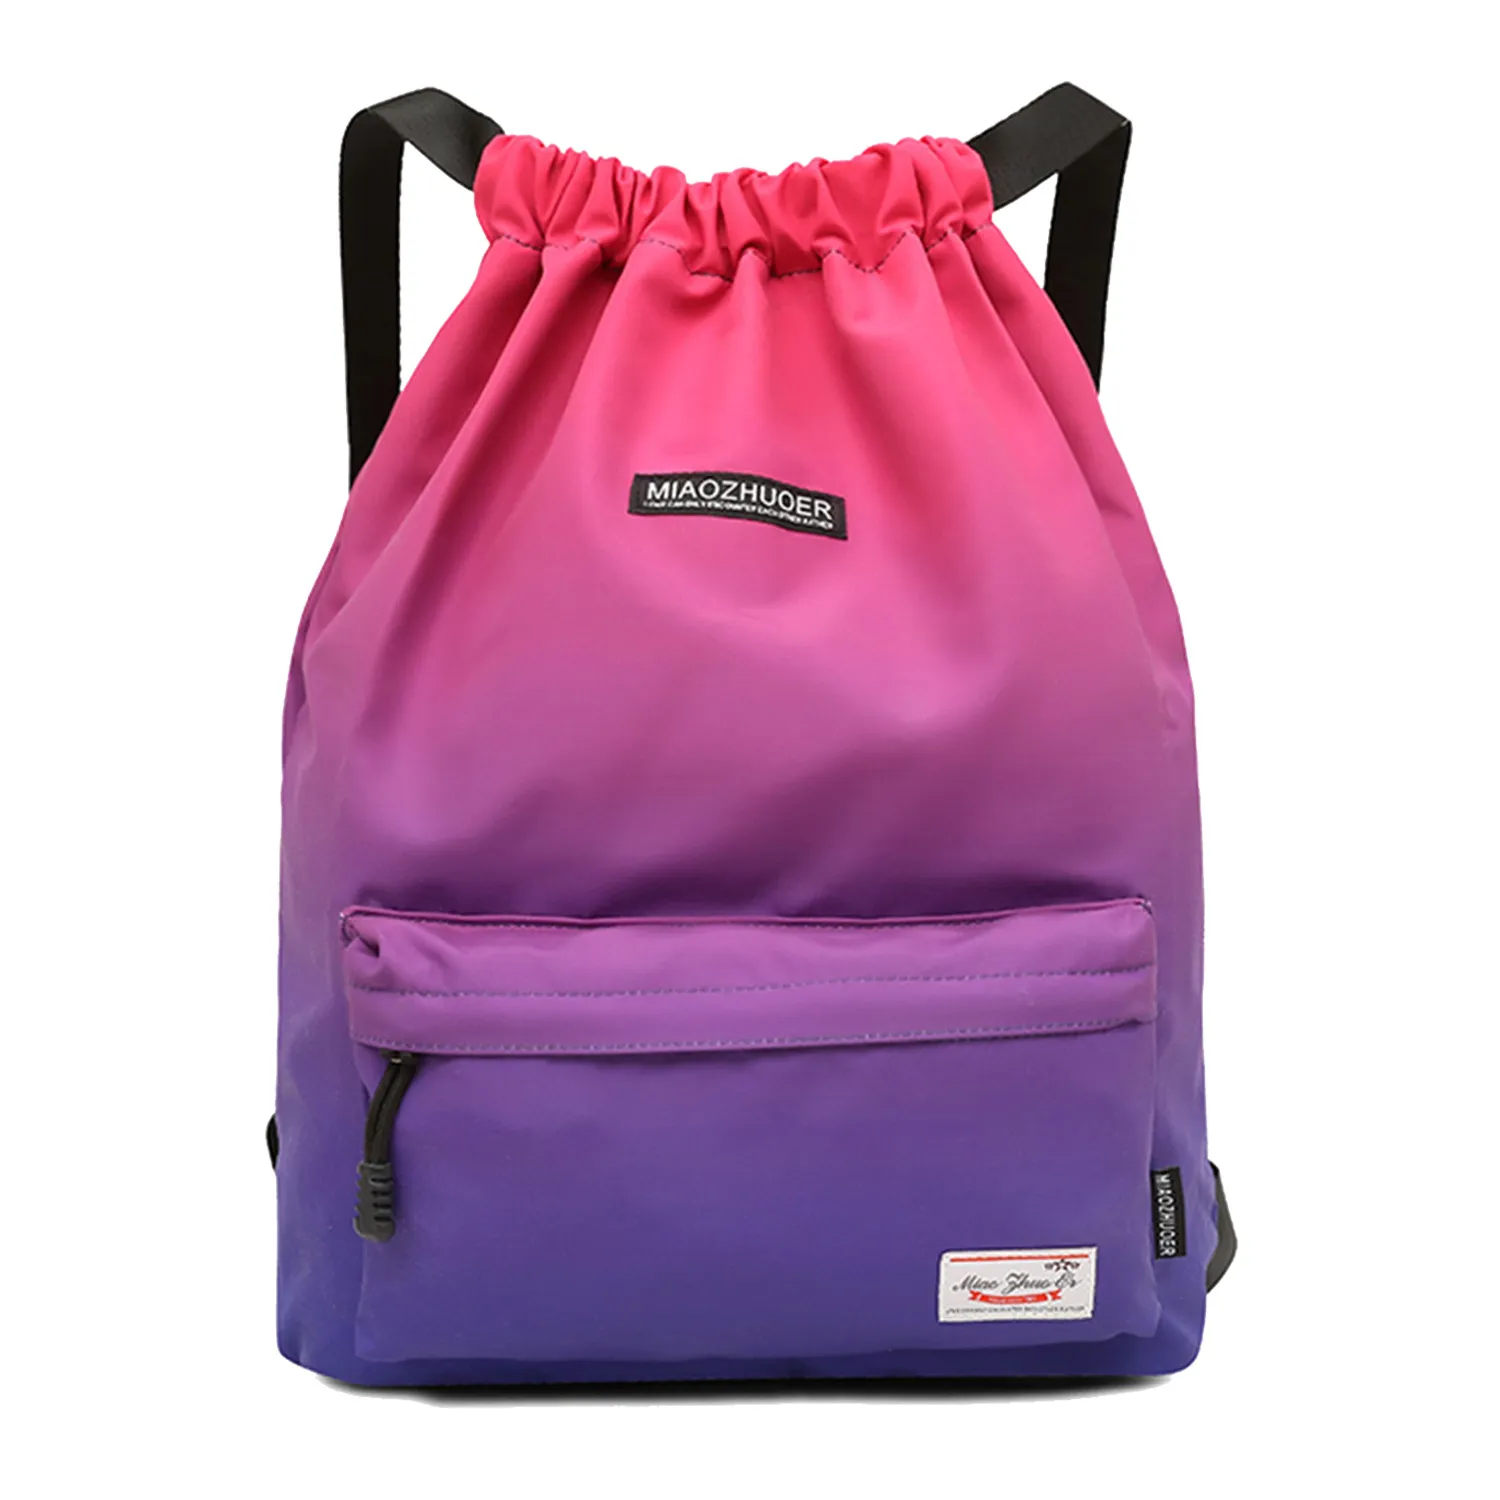 Водонепроницаемая спортивная сумка Женщины Девушки спортивная сумка Путешествия Drawstring сумка Открытый Рюкзак для обучения Плавание Фитнес Сумки Softback